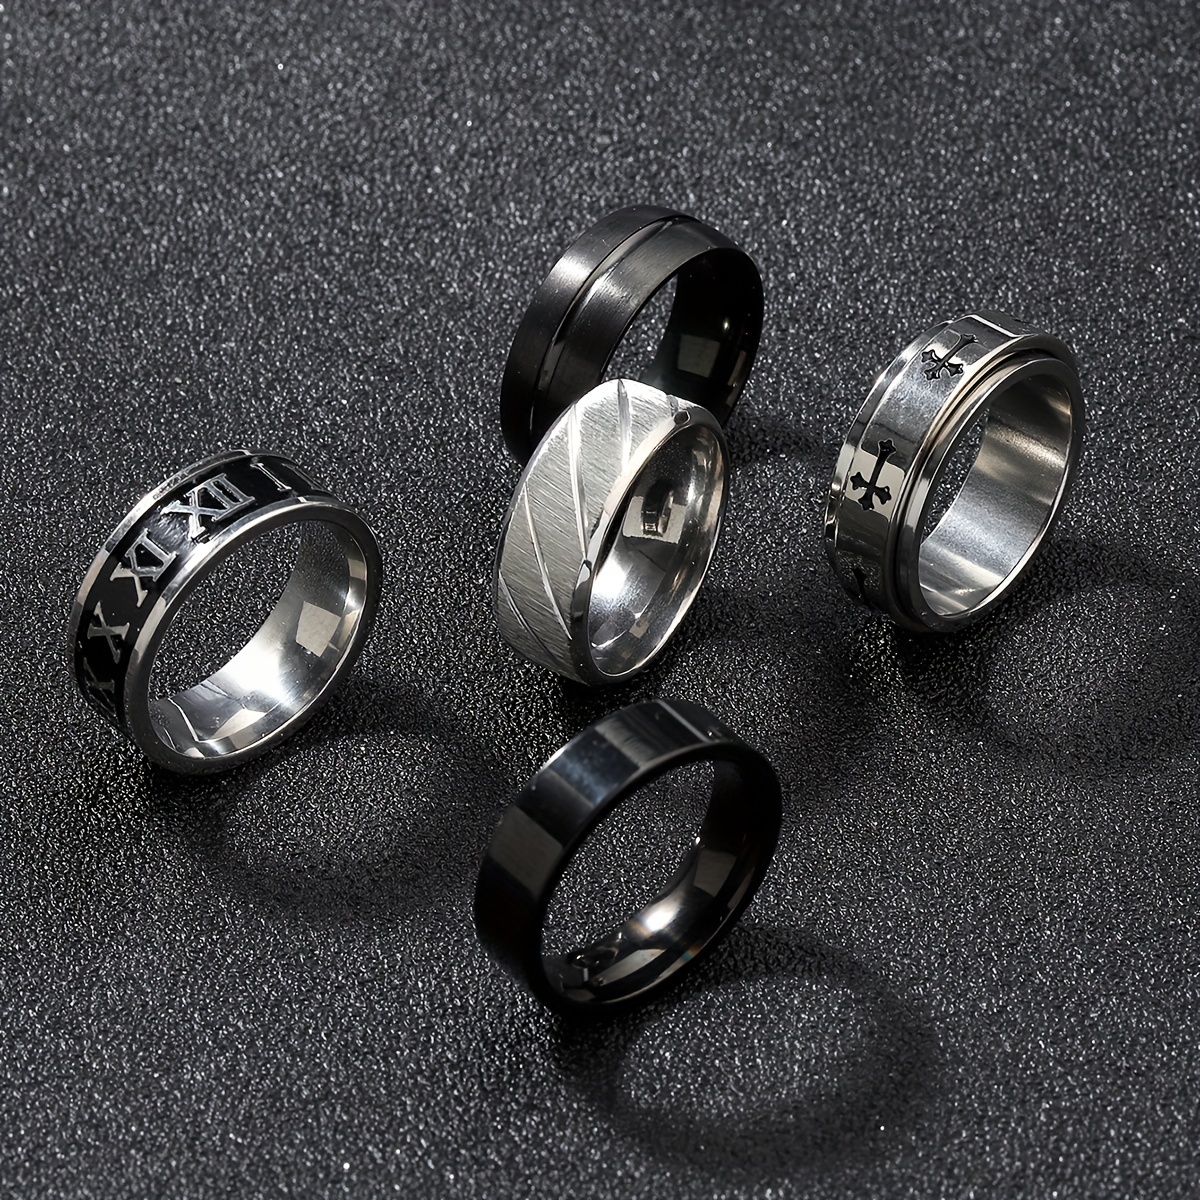 16 anillos de acero inoxidable para hombres, juego de anillos giratorios  masculinos geniales, anillos plateados para la ansiedad, paquete de anillos